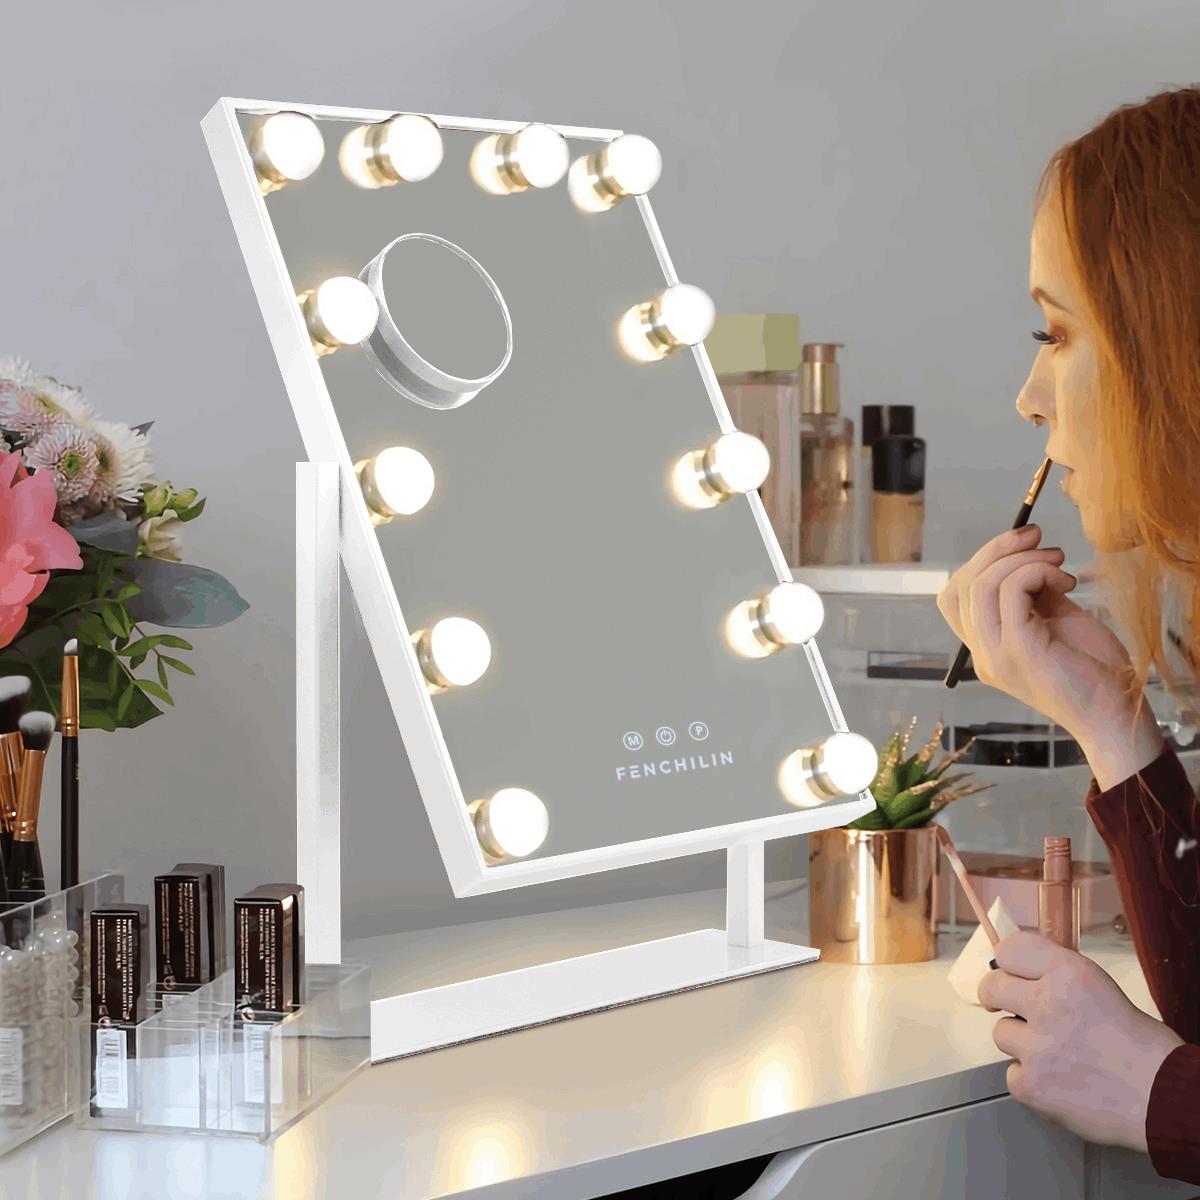 Organizador de maquillaje con espejo y luz led. – Sweethome